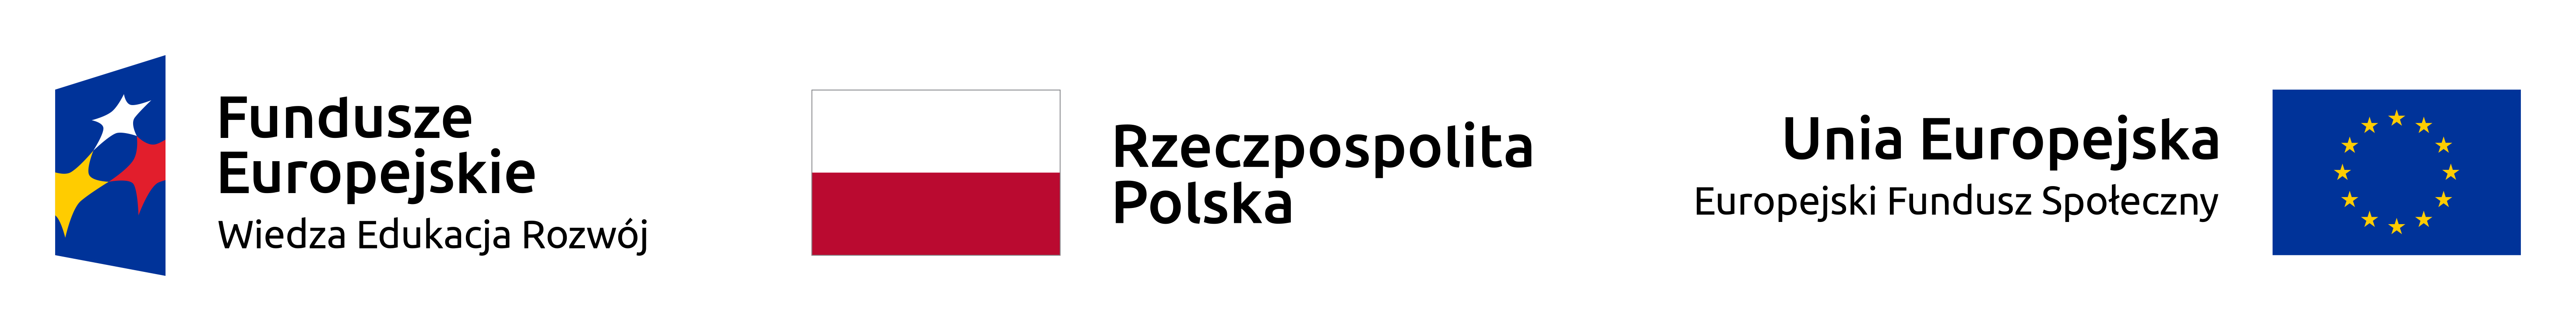 Logotypy: Program Wiedza, Edukacja Rozwój, flaga Polski, Unia Europejska, Europejski Fundusz Społeczny